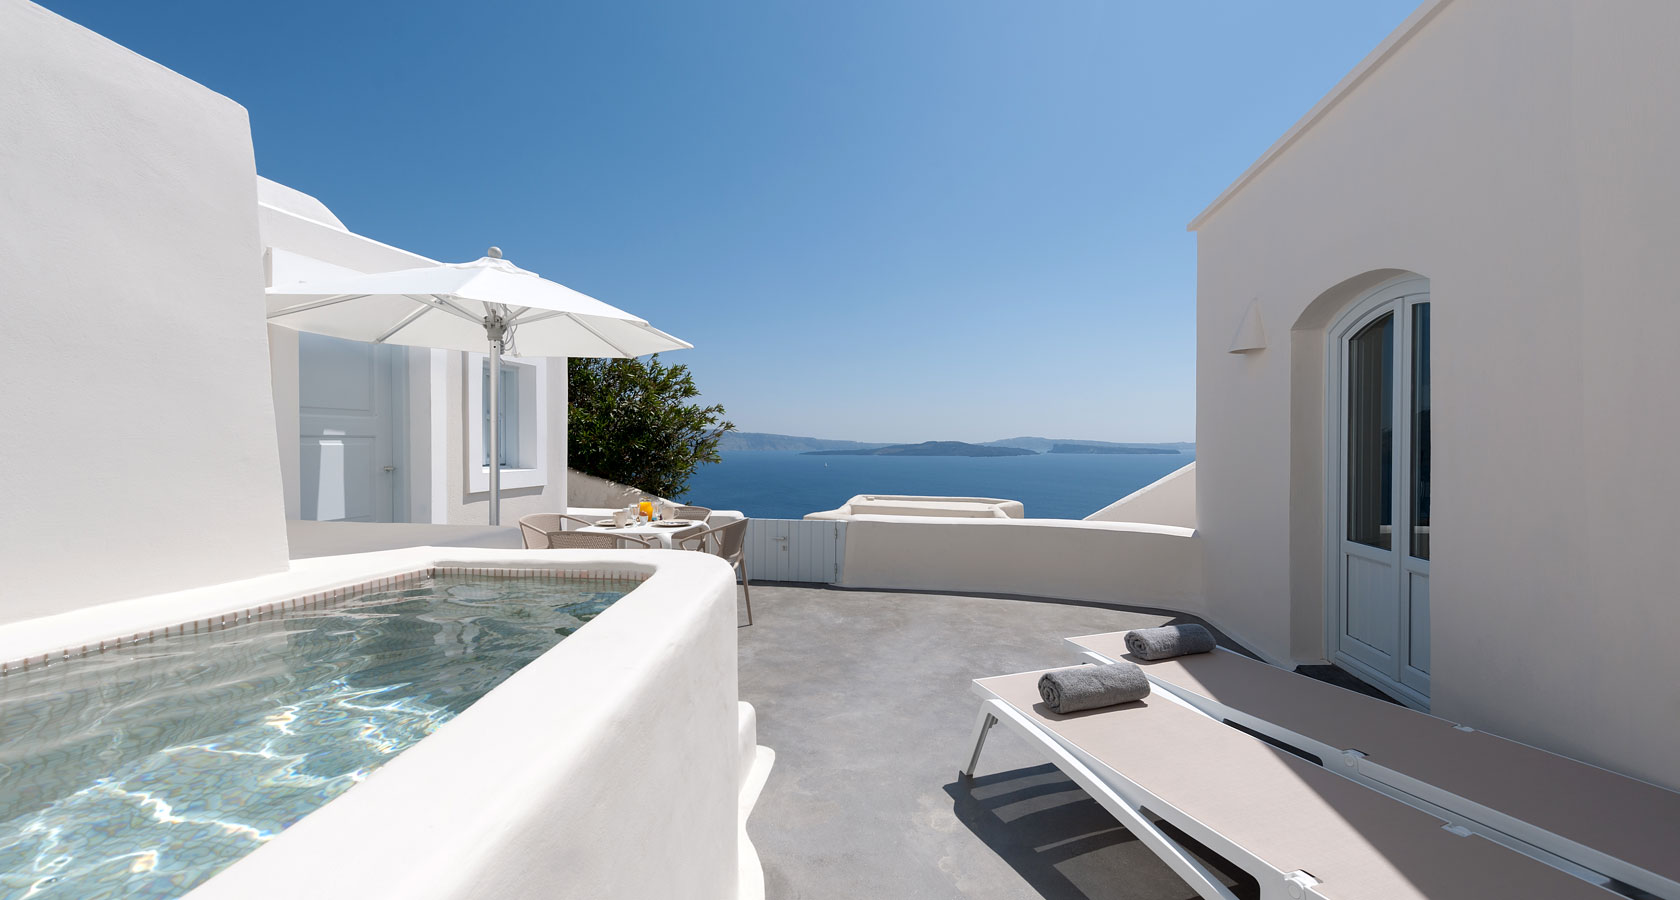 The facilities of Anemomilos private villas in Oia Santorini